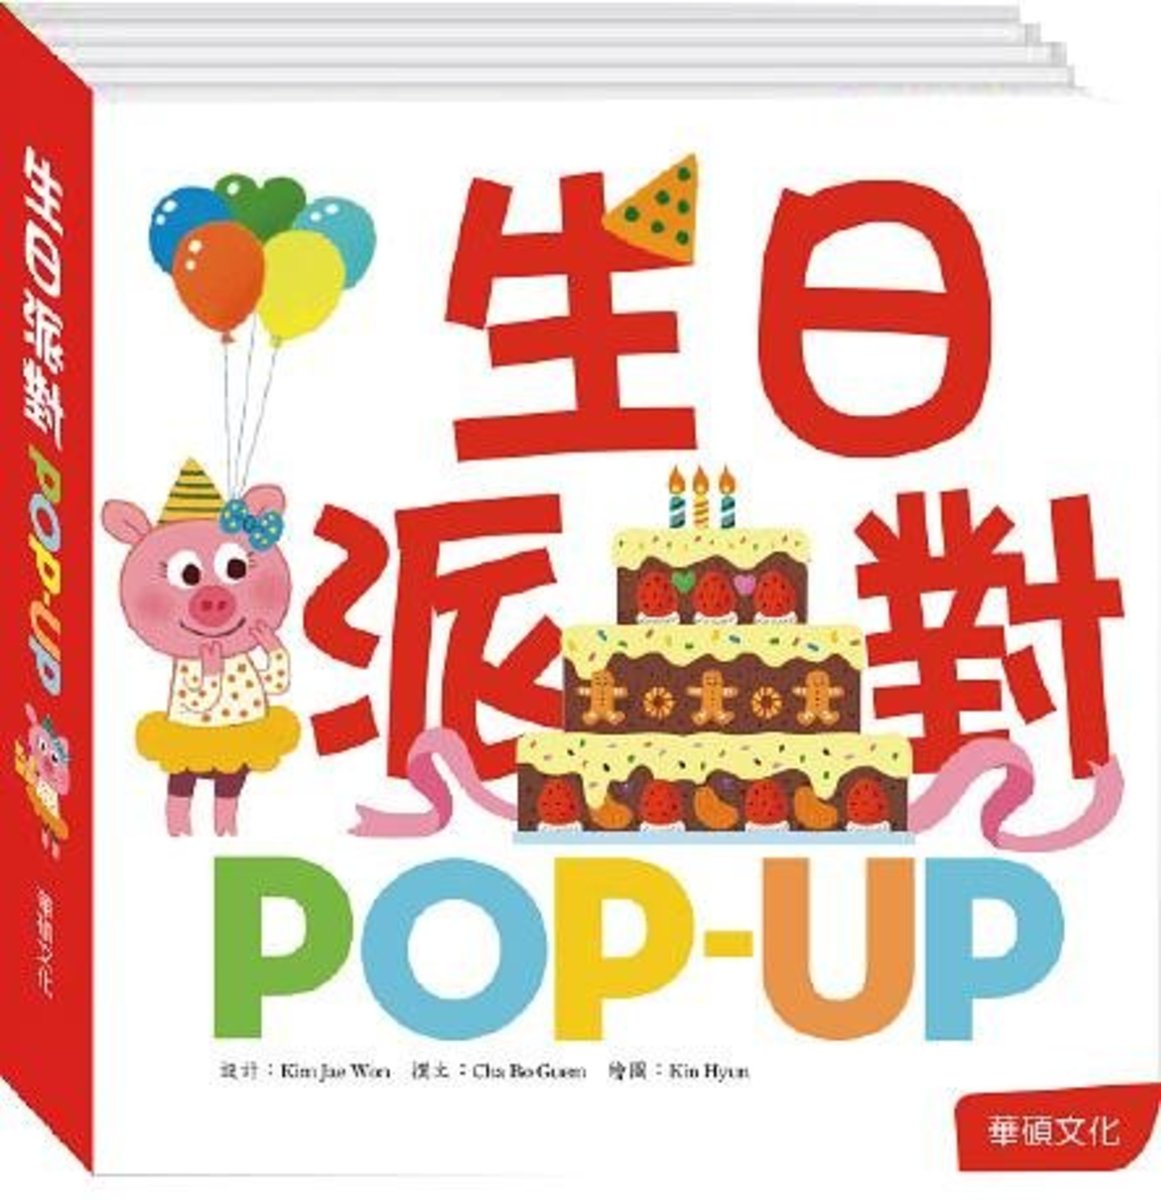 生日派對 POP-UP